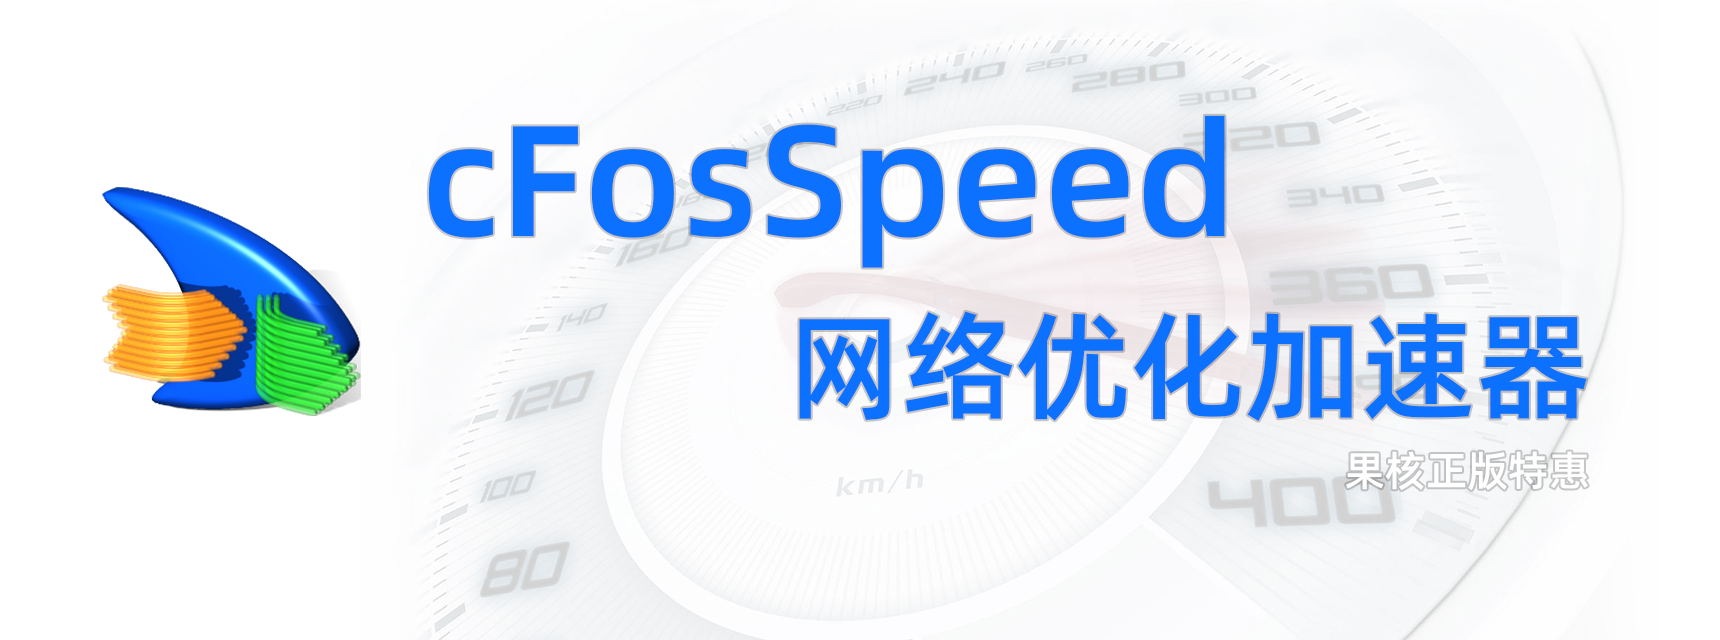 【正版特惠】cFosSpeed 网络优化加速器 永久授权低至28.8